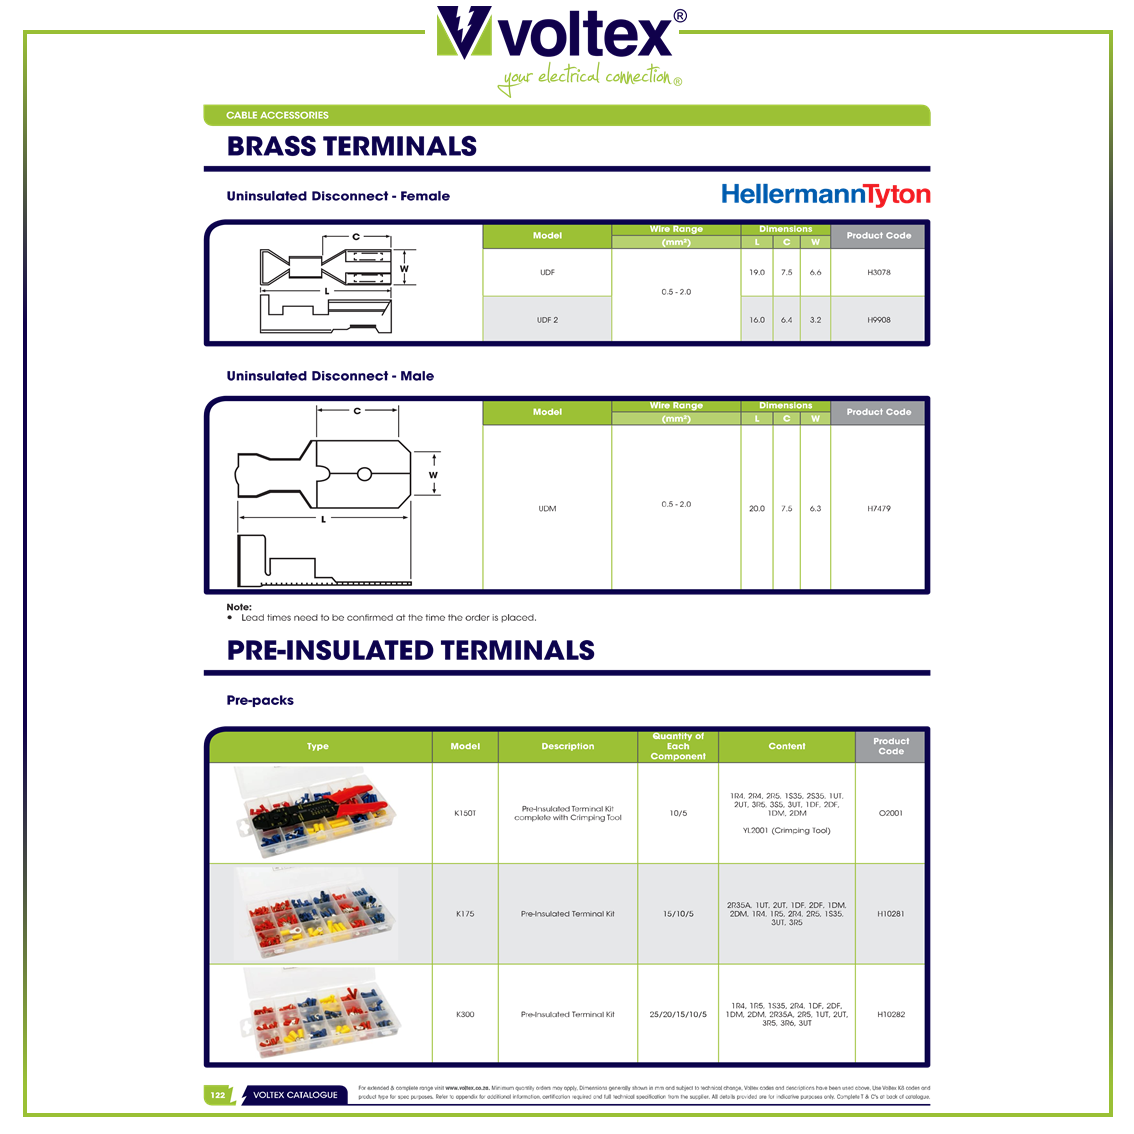 VOLTEX - Brass Terminals Catalogue